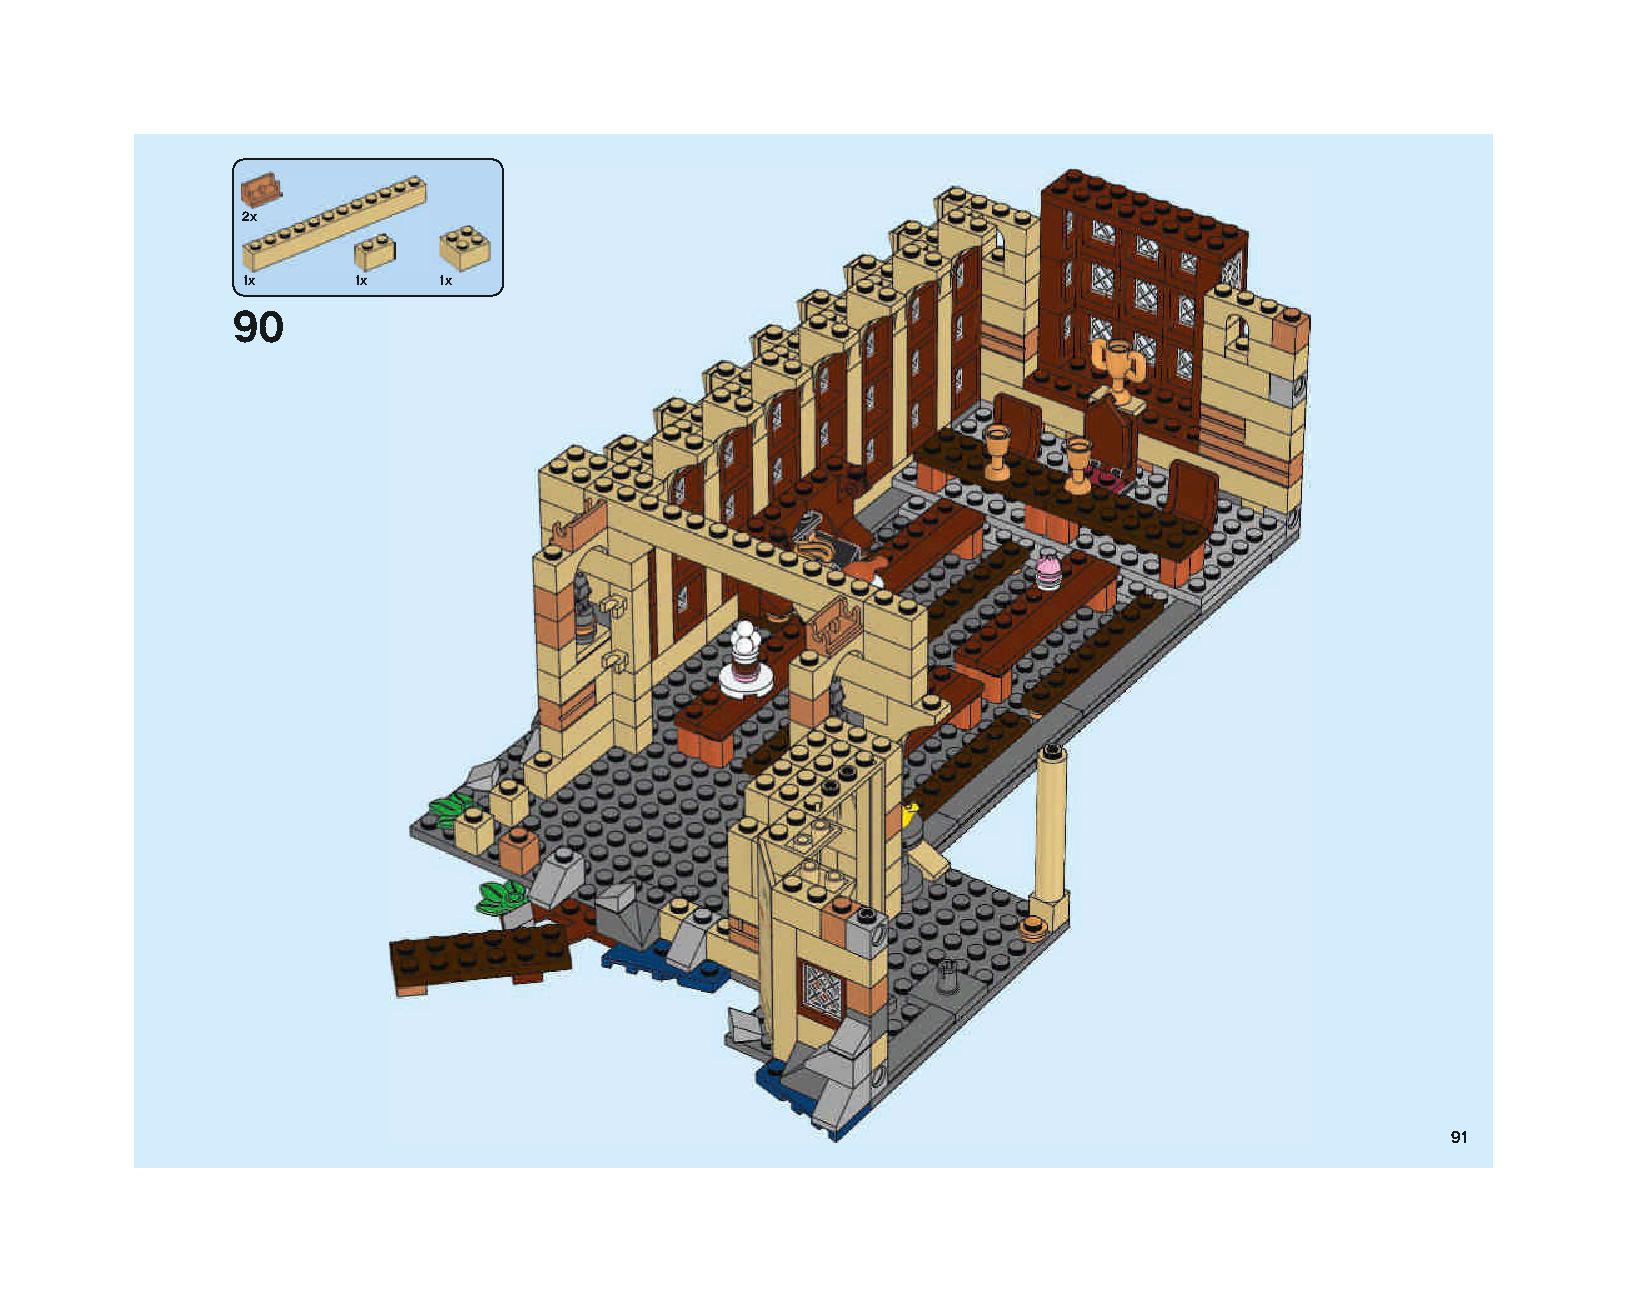 ホグワーツの大広間 75954 レゴの商品情報 レゴの説明書・組立方法 91 page